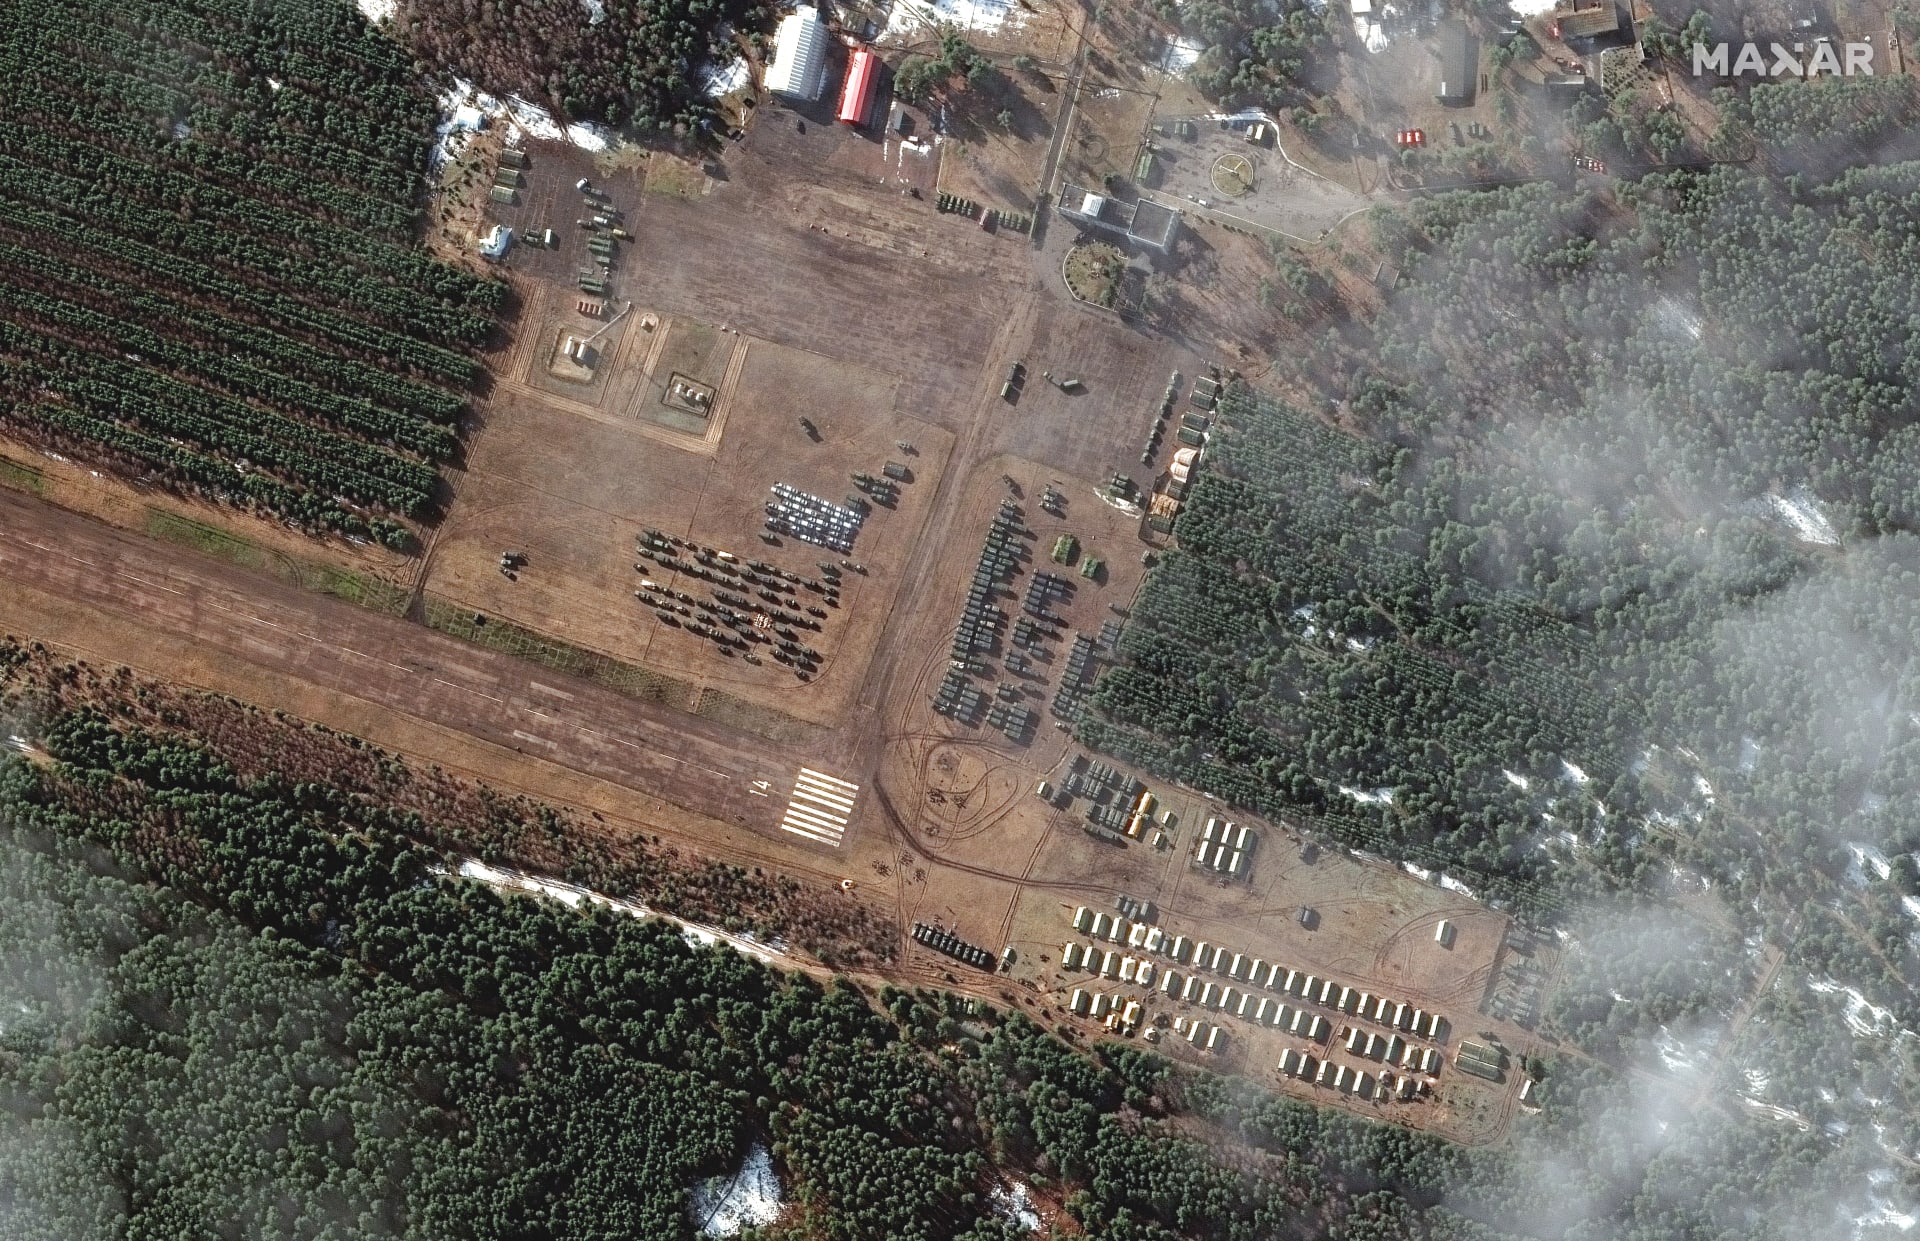 Satelitní snímky ukazují, že ve venkovských oblastech jihozápadně od Bělgorodu, necelých 20 kilometrů severozápadně od hranic s Ukrajinou, bylo zřízeno několik nových míst rozmístění vojáků a vybavení.